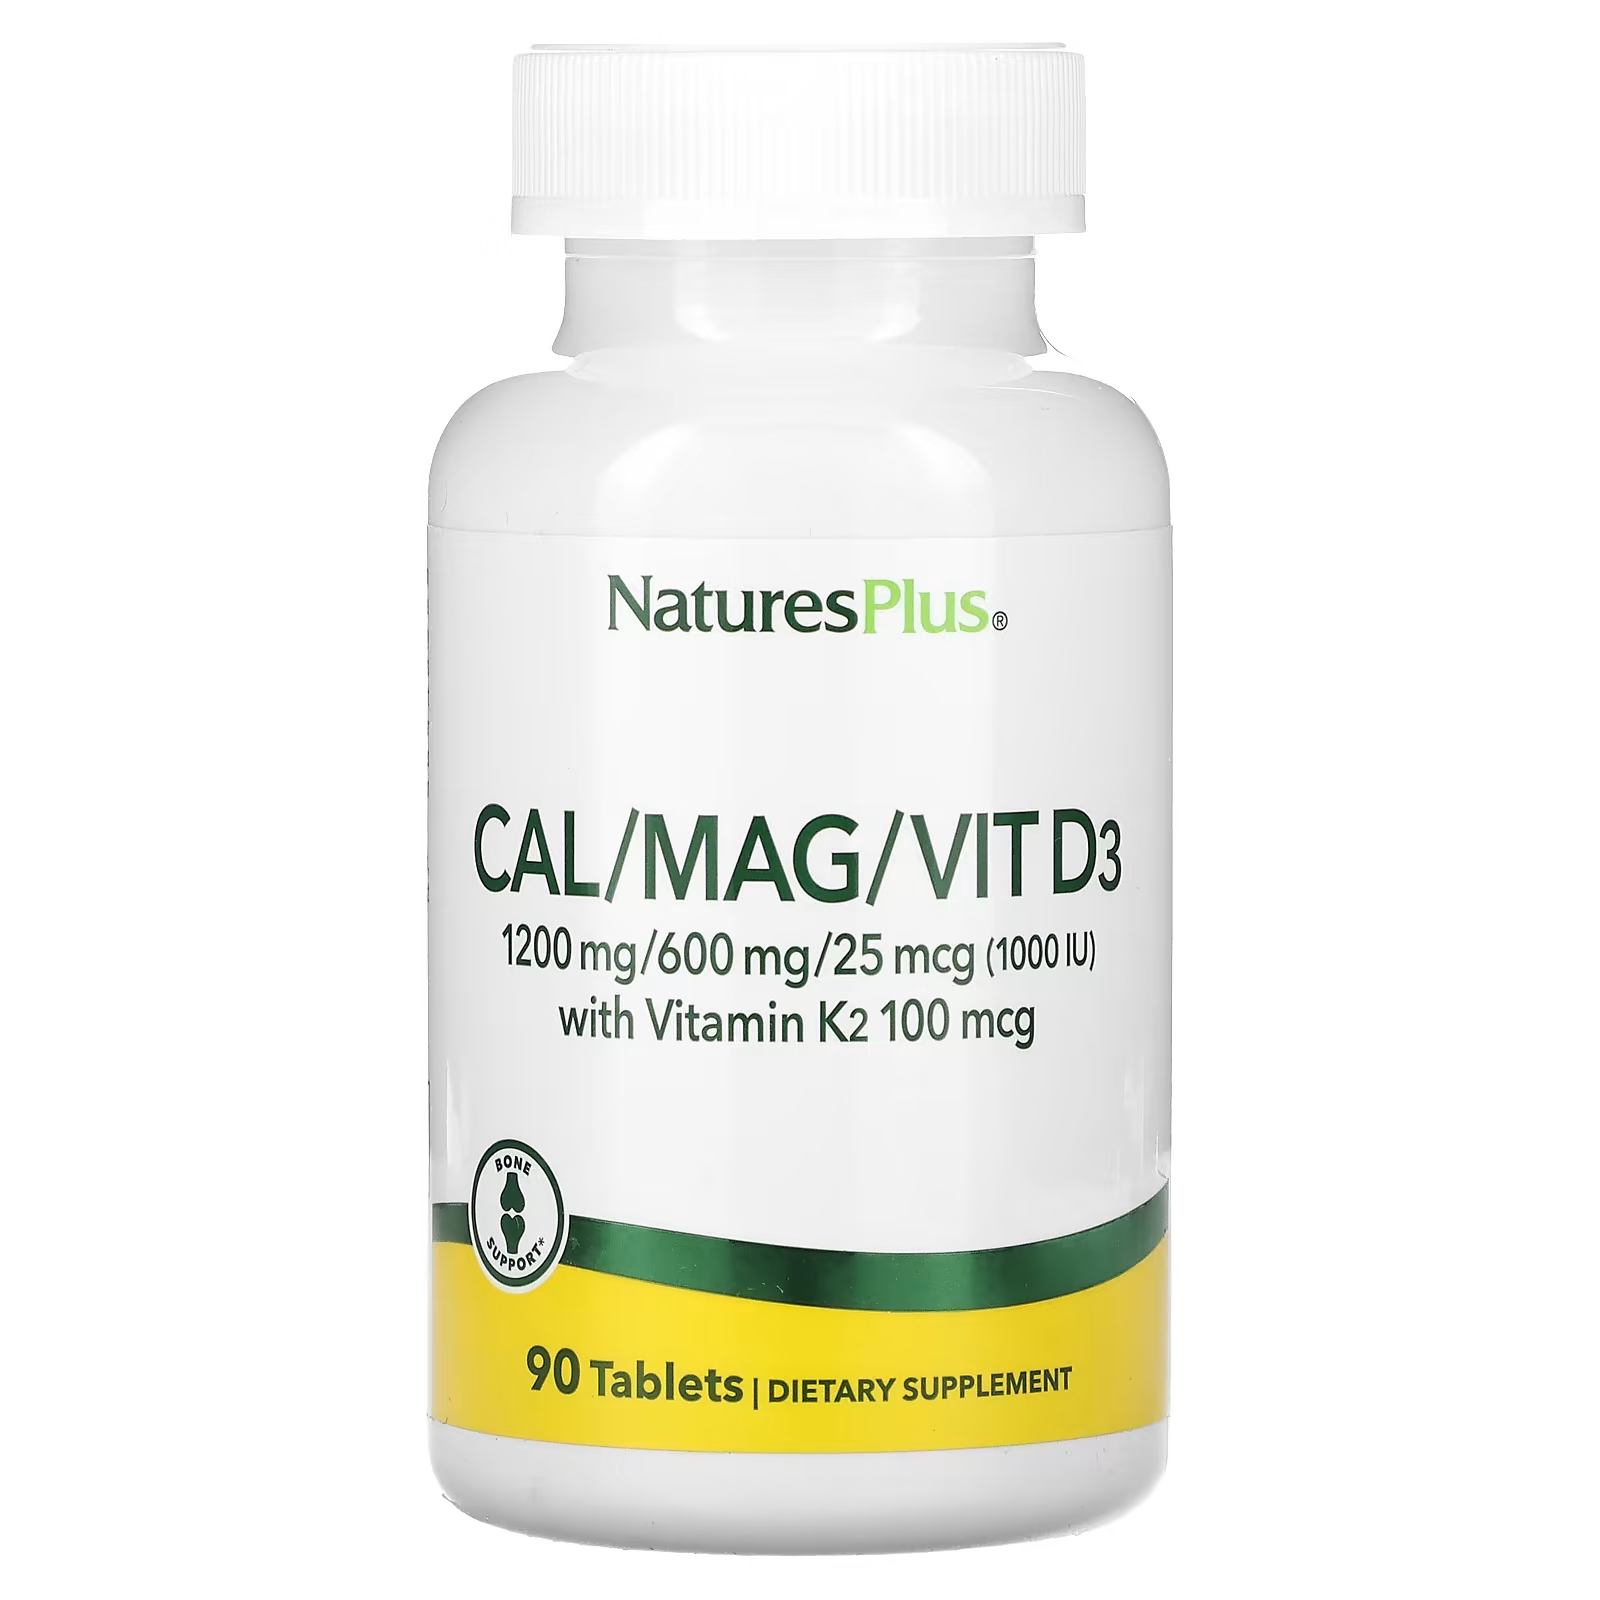 Пищевая добавка NaturesPlus Кальций-магний-витамин D3 с витамином K2, 90 таблеток пищевая добавка naturesplus кальций магний витамин d3 с витамином k2 90 таблеток